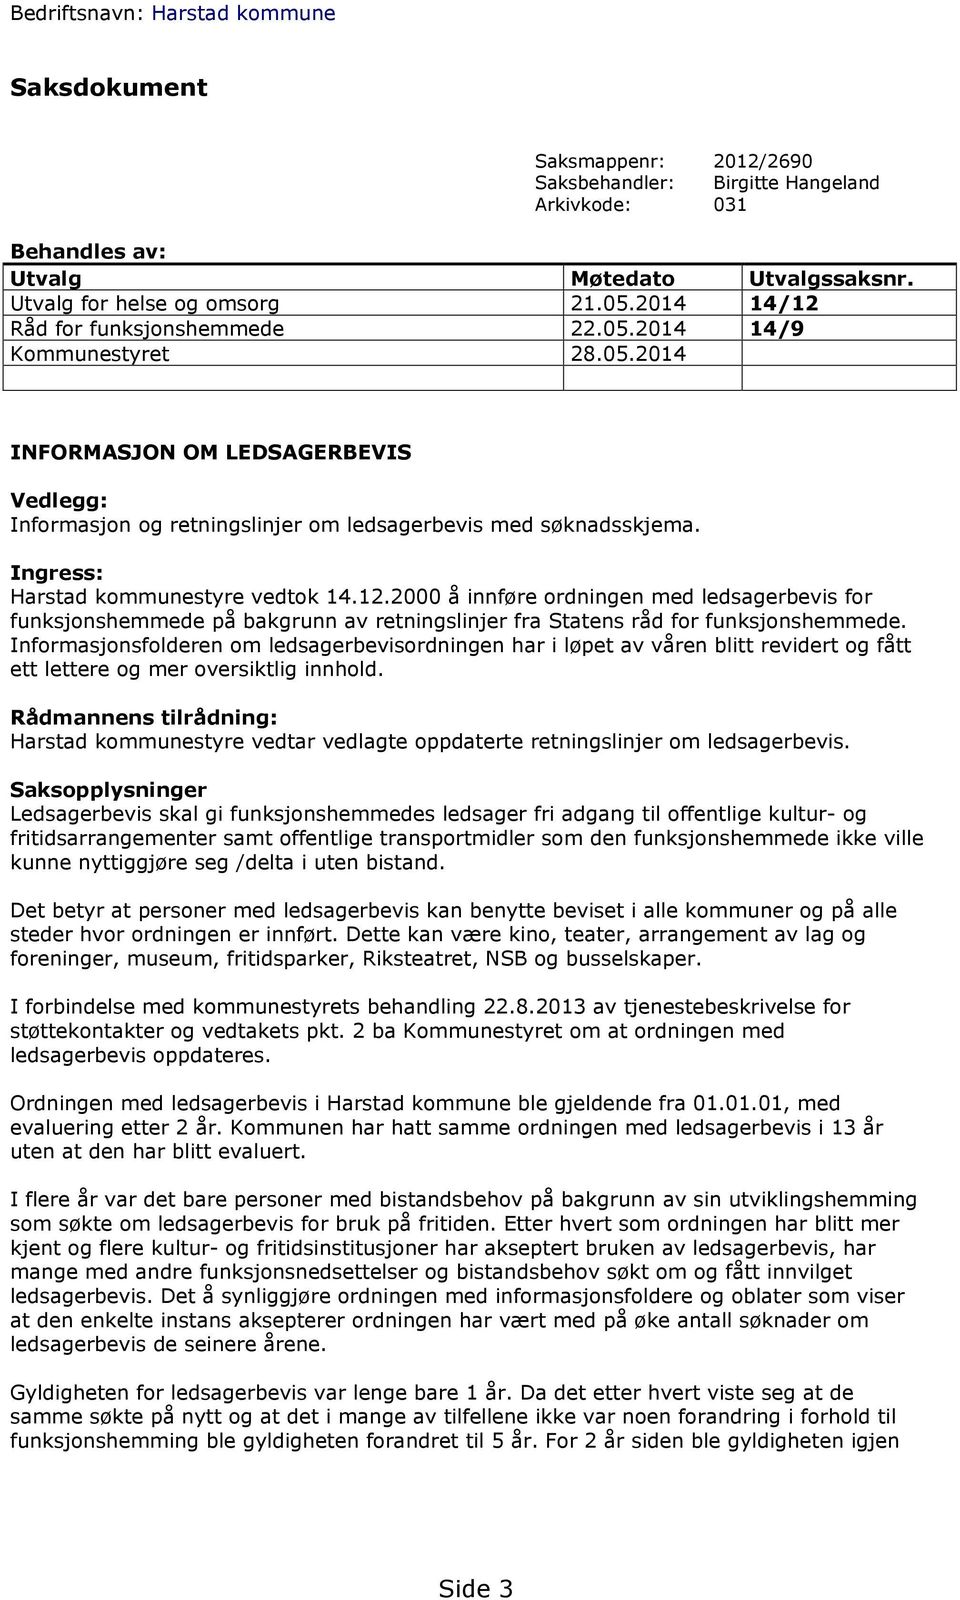 Ingress: Harstad kommunestyre vedtok 14.12.2000 å innføre ordningen med ledsagerbevis for funksjonshemmede på bakgrunn av retningslinjer fra Statens råd for funksjonshemmede.